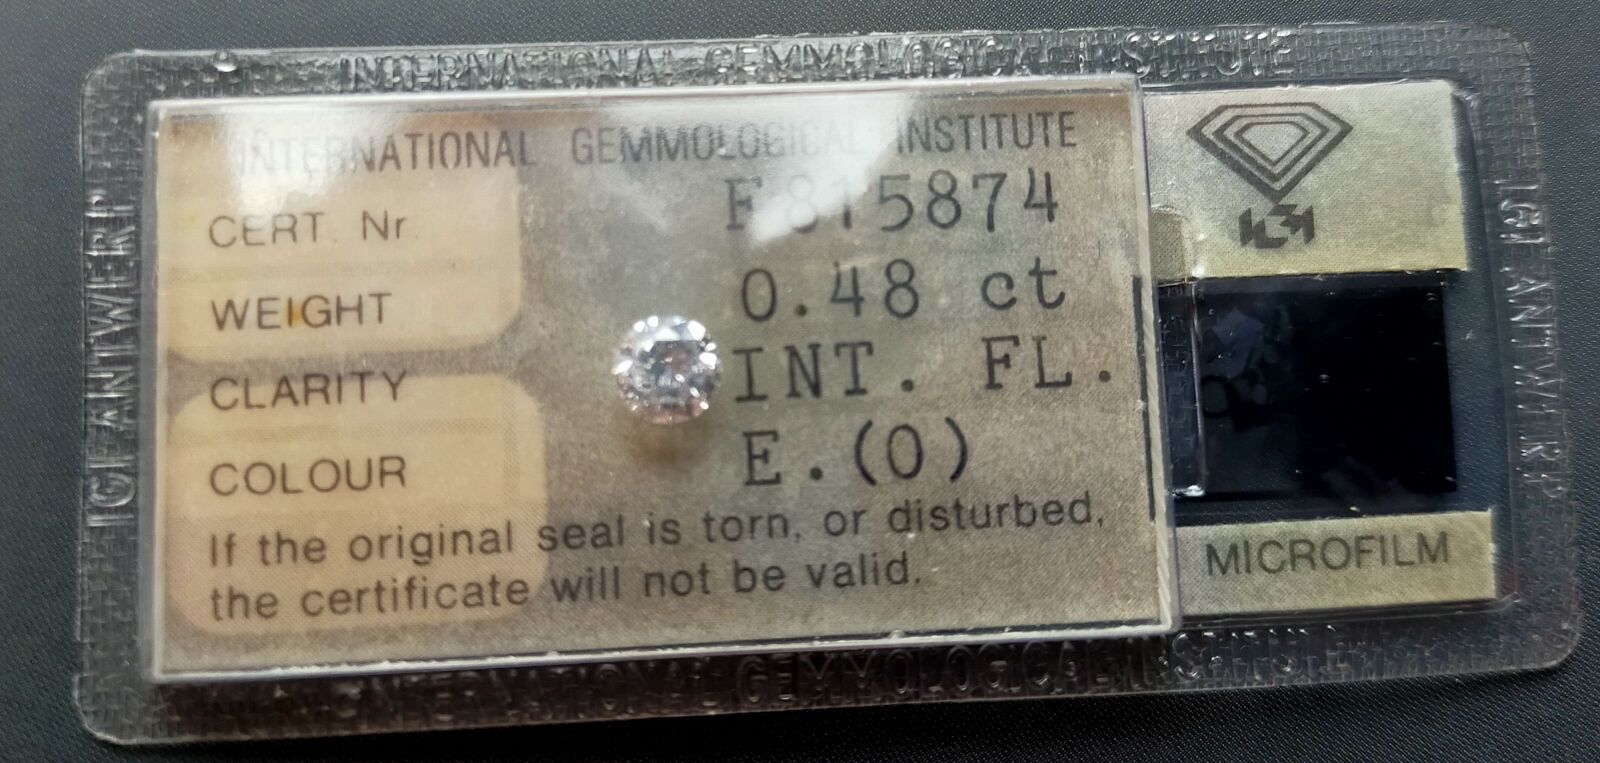 Null 塑料中的圆形明亮式切割钻石。伴随着1979年11月27日IGI n°F815874的钻石证书，注明了:
- 质量：0.48克拉 
- 颜色：E
- 明&hellip;